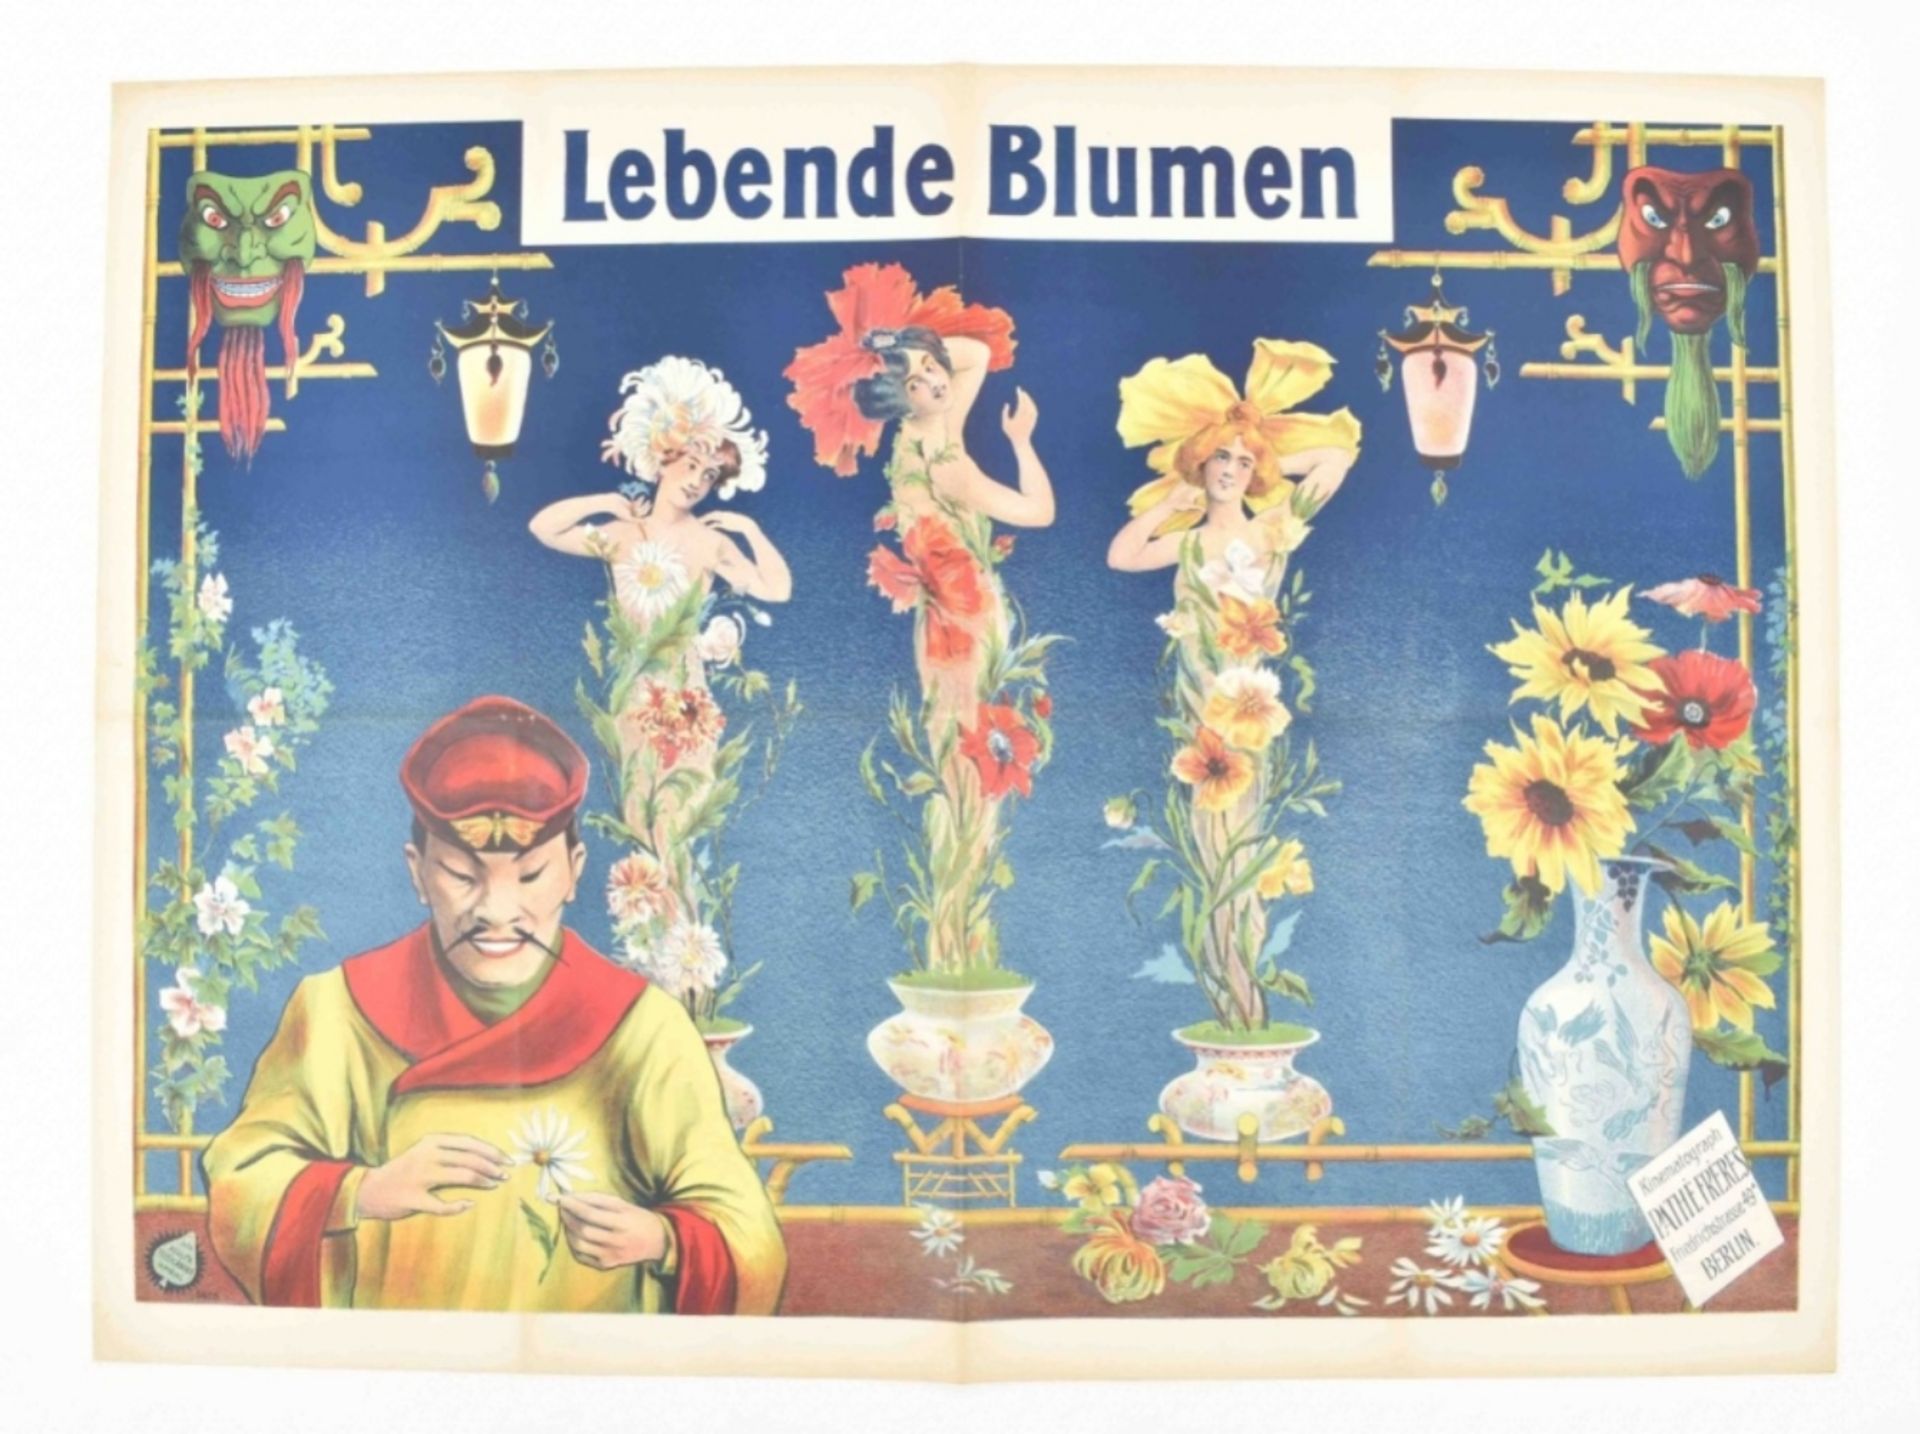 [Miscellaneous] [Trick film] Lebende Blumen Kinematograph [...], Berlin. Friedländer, Hamburg, 1906